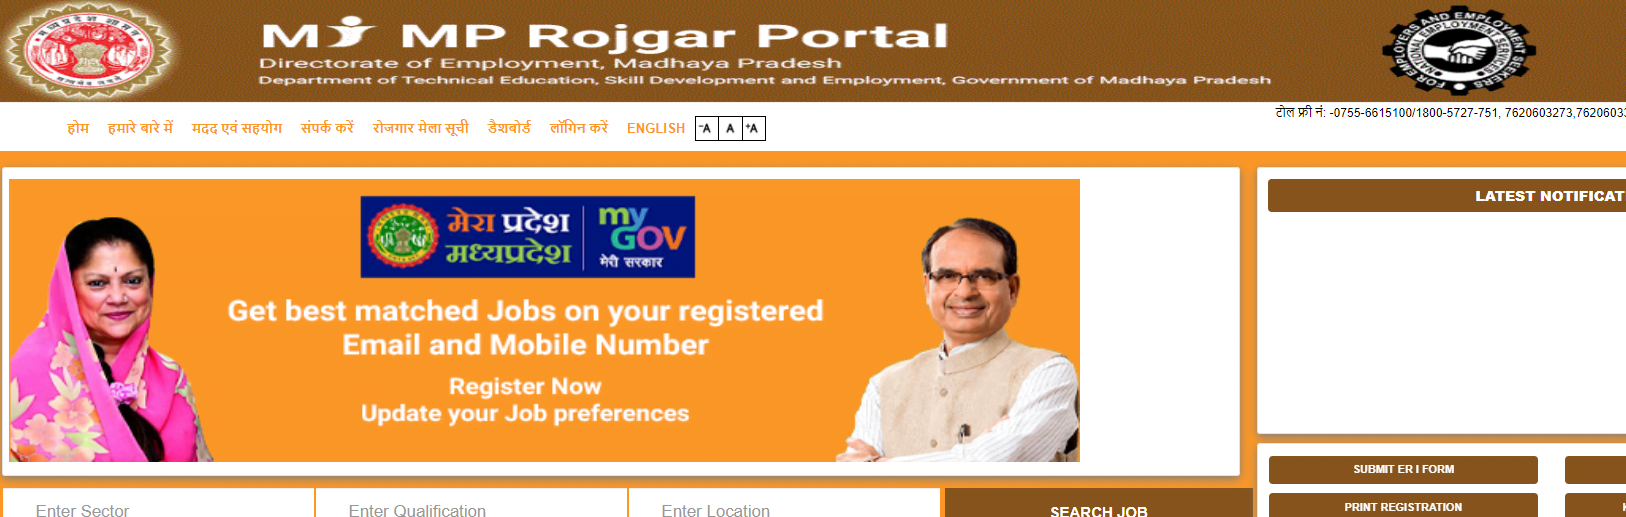 mp rojgar portal online registration